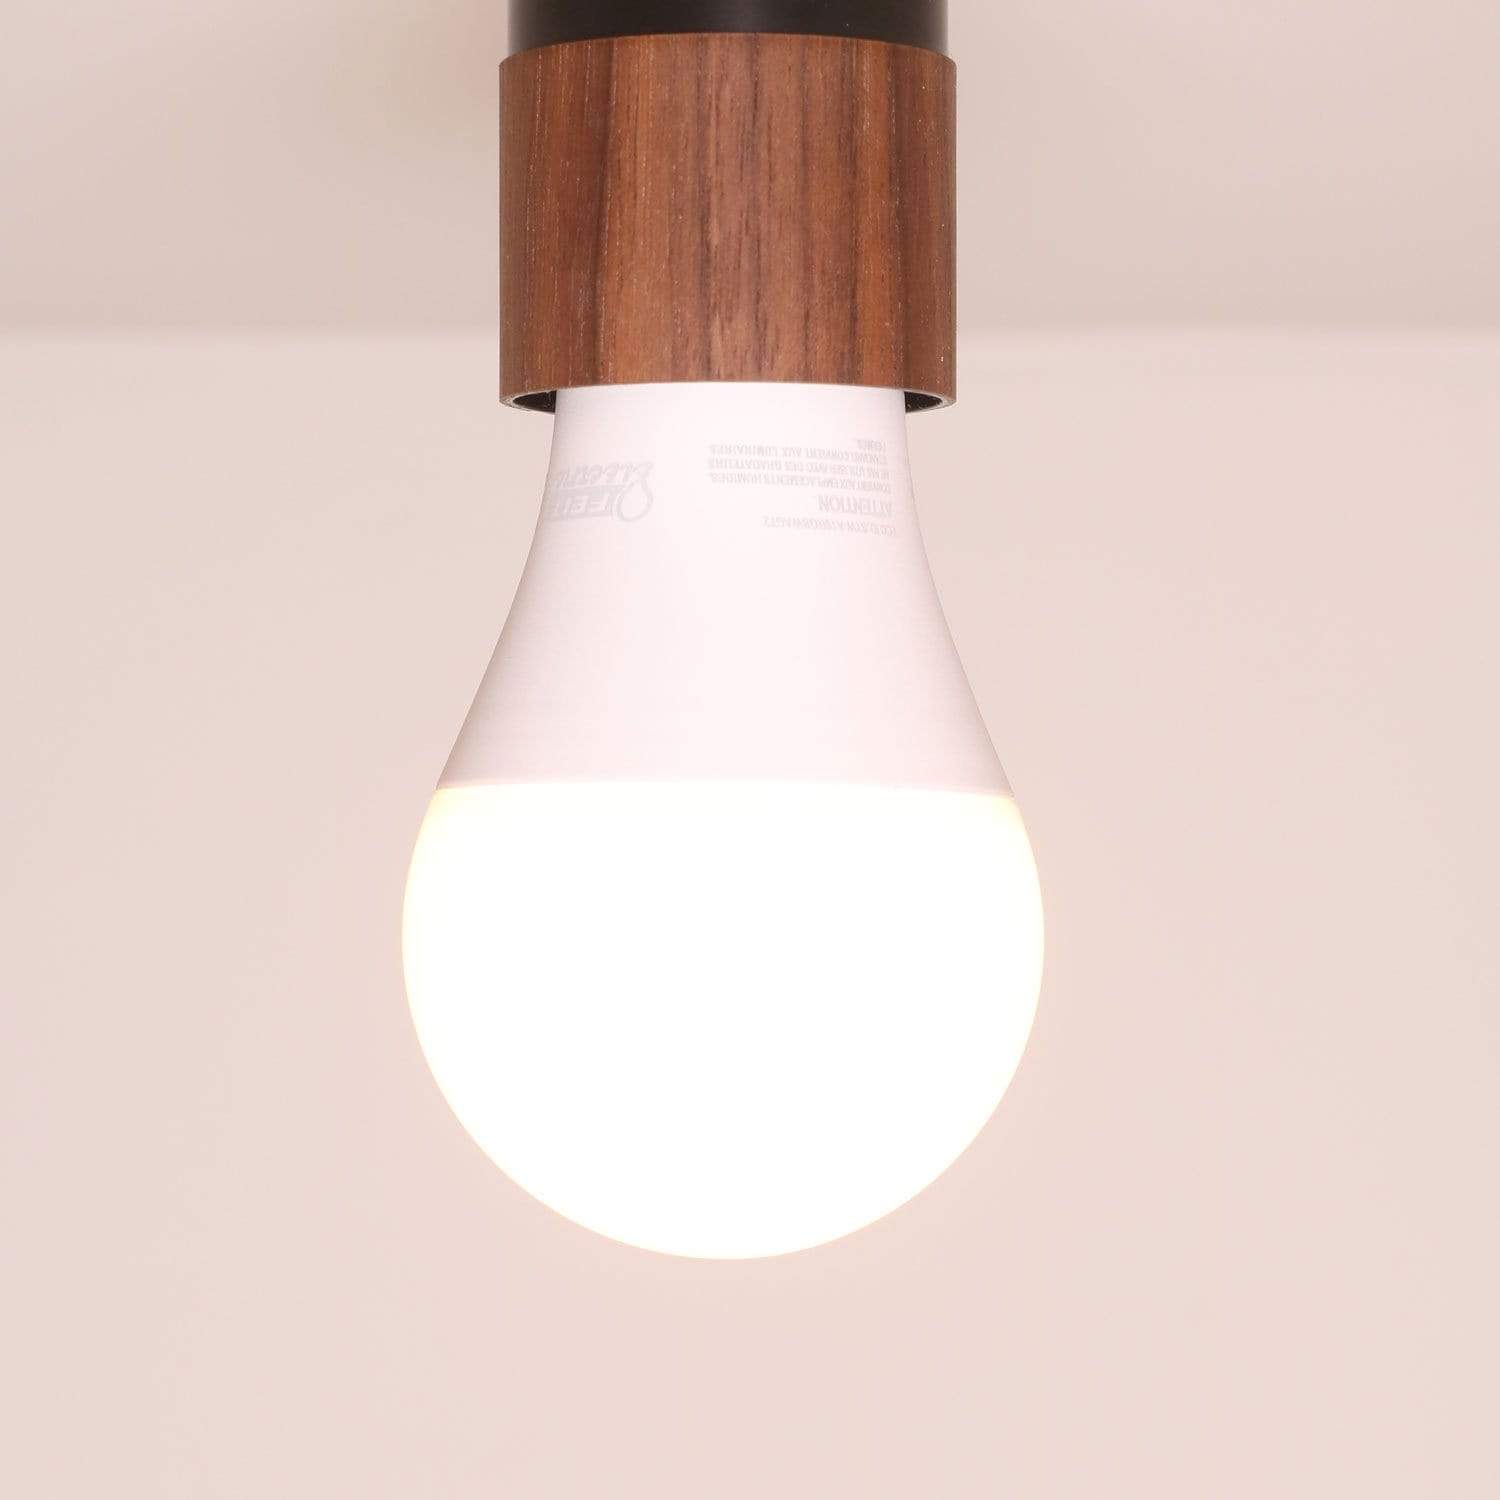 Smart LED bulb